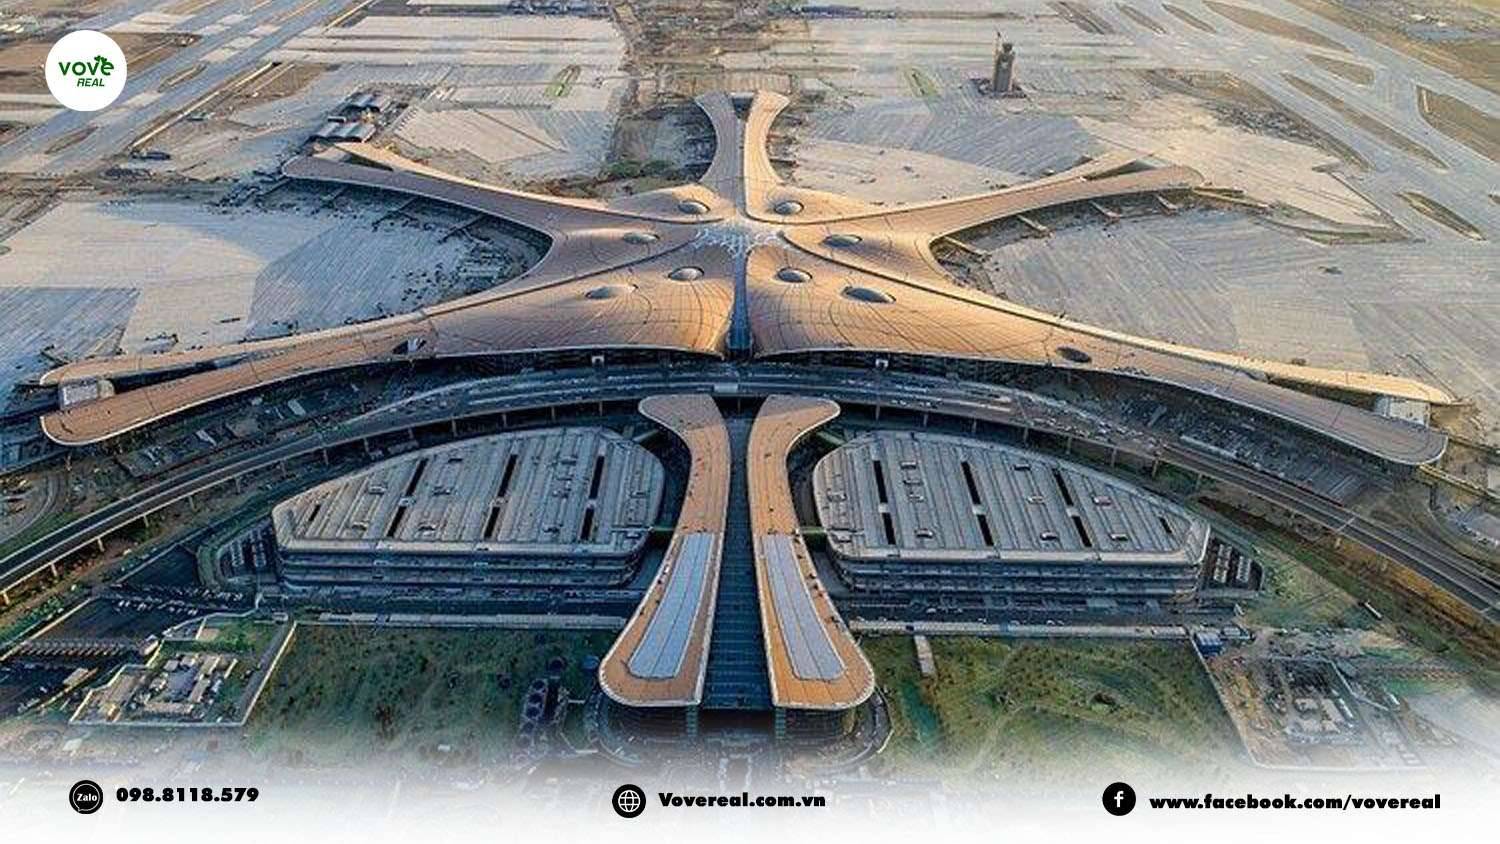 Quyết định khởi công 3 tuyến đường kết nối sân bay Long Thành trong năm 2023